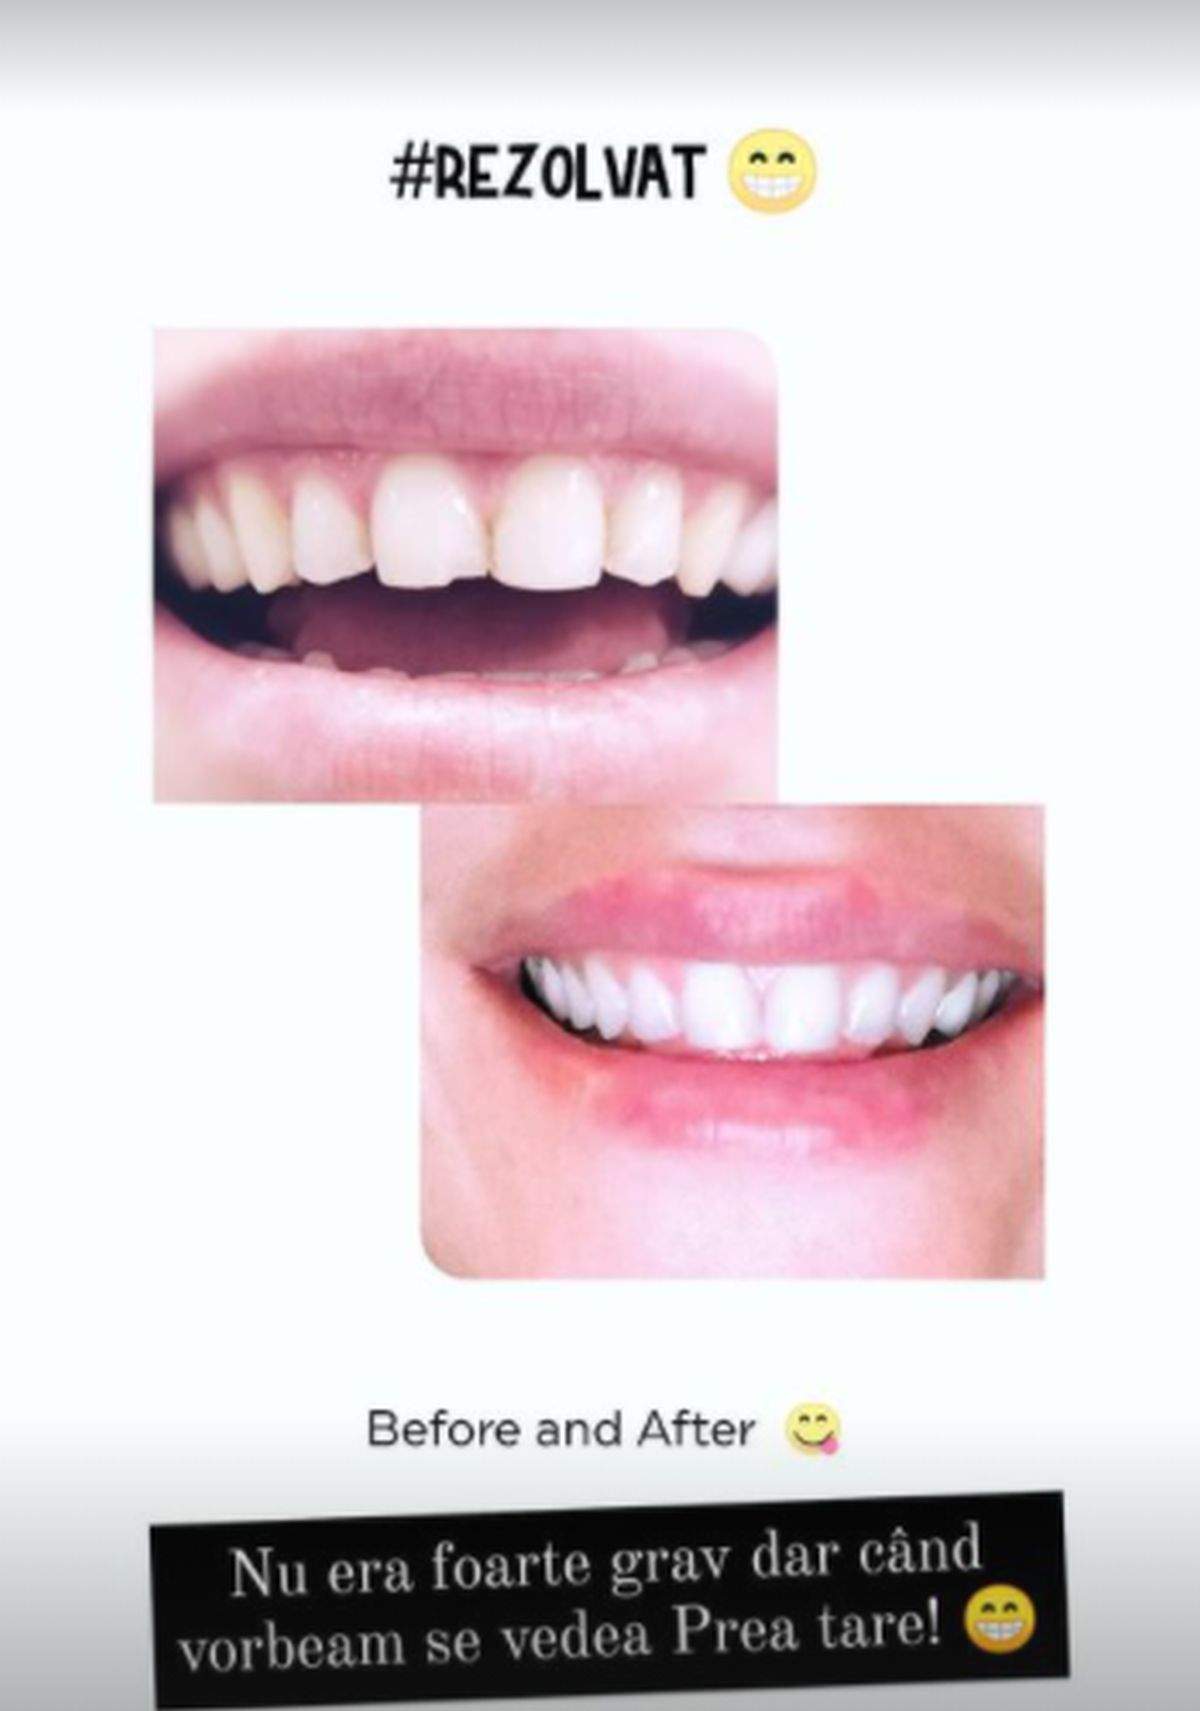 Dintele Alinei Pușcaș spart vs dintele reparat de soțul ei